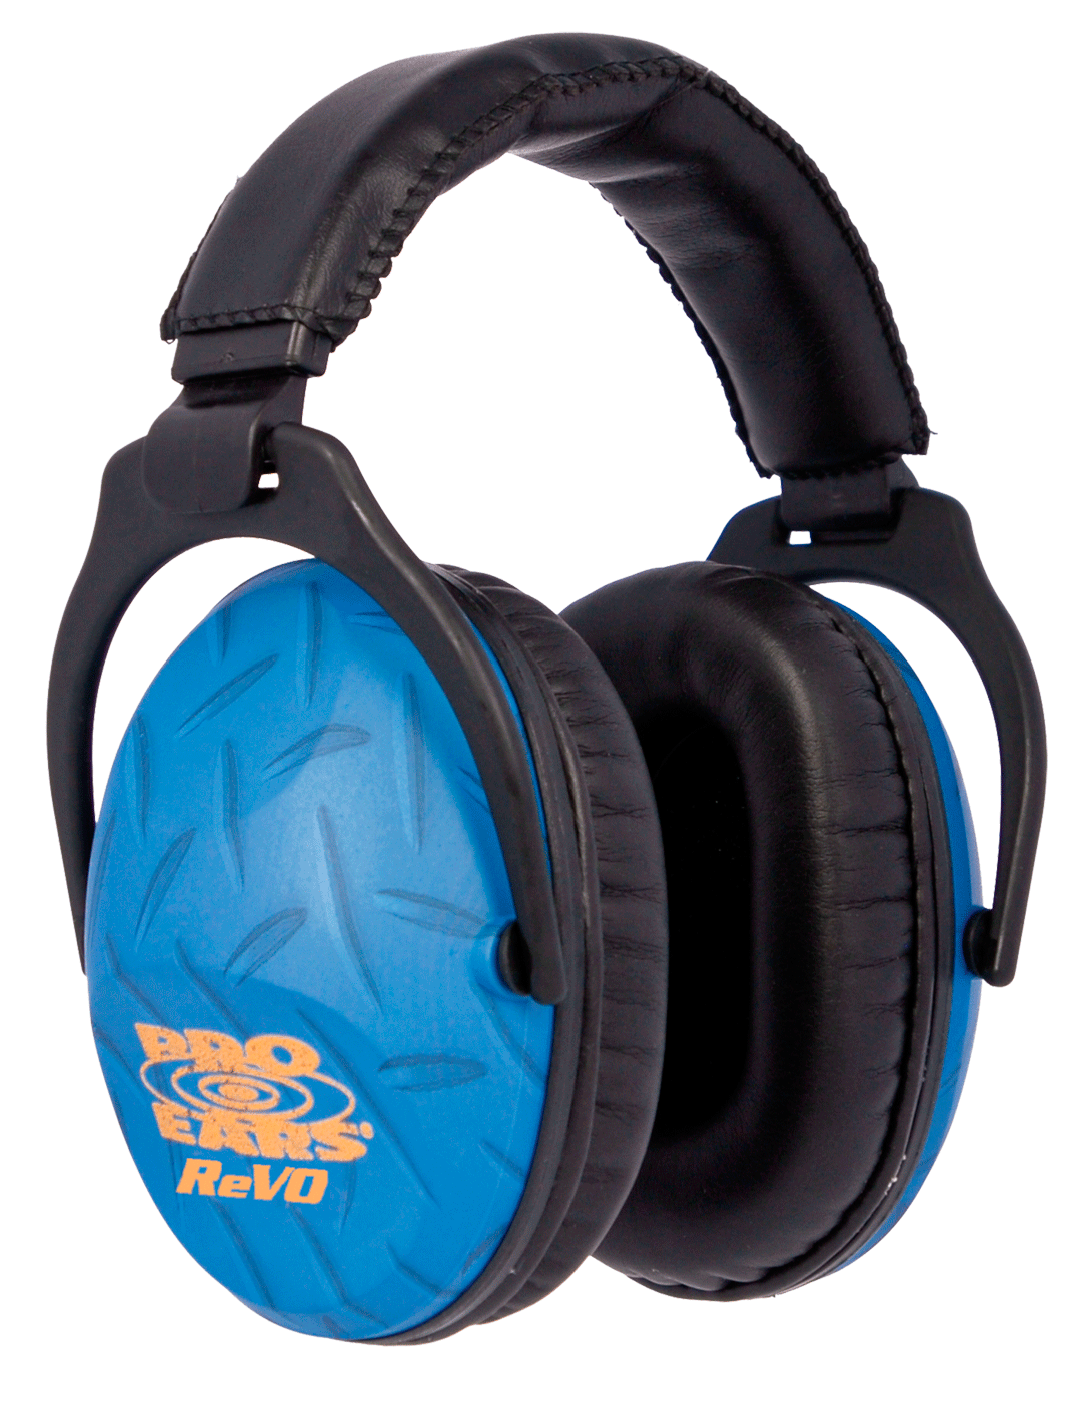 Pro Ears Pro Ears Revo, Revo Pe26uy010 Nrr26 Blue Diaplat Shooting